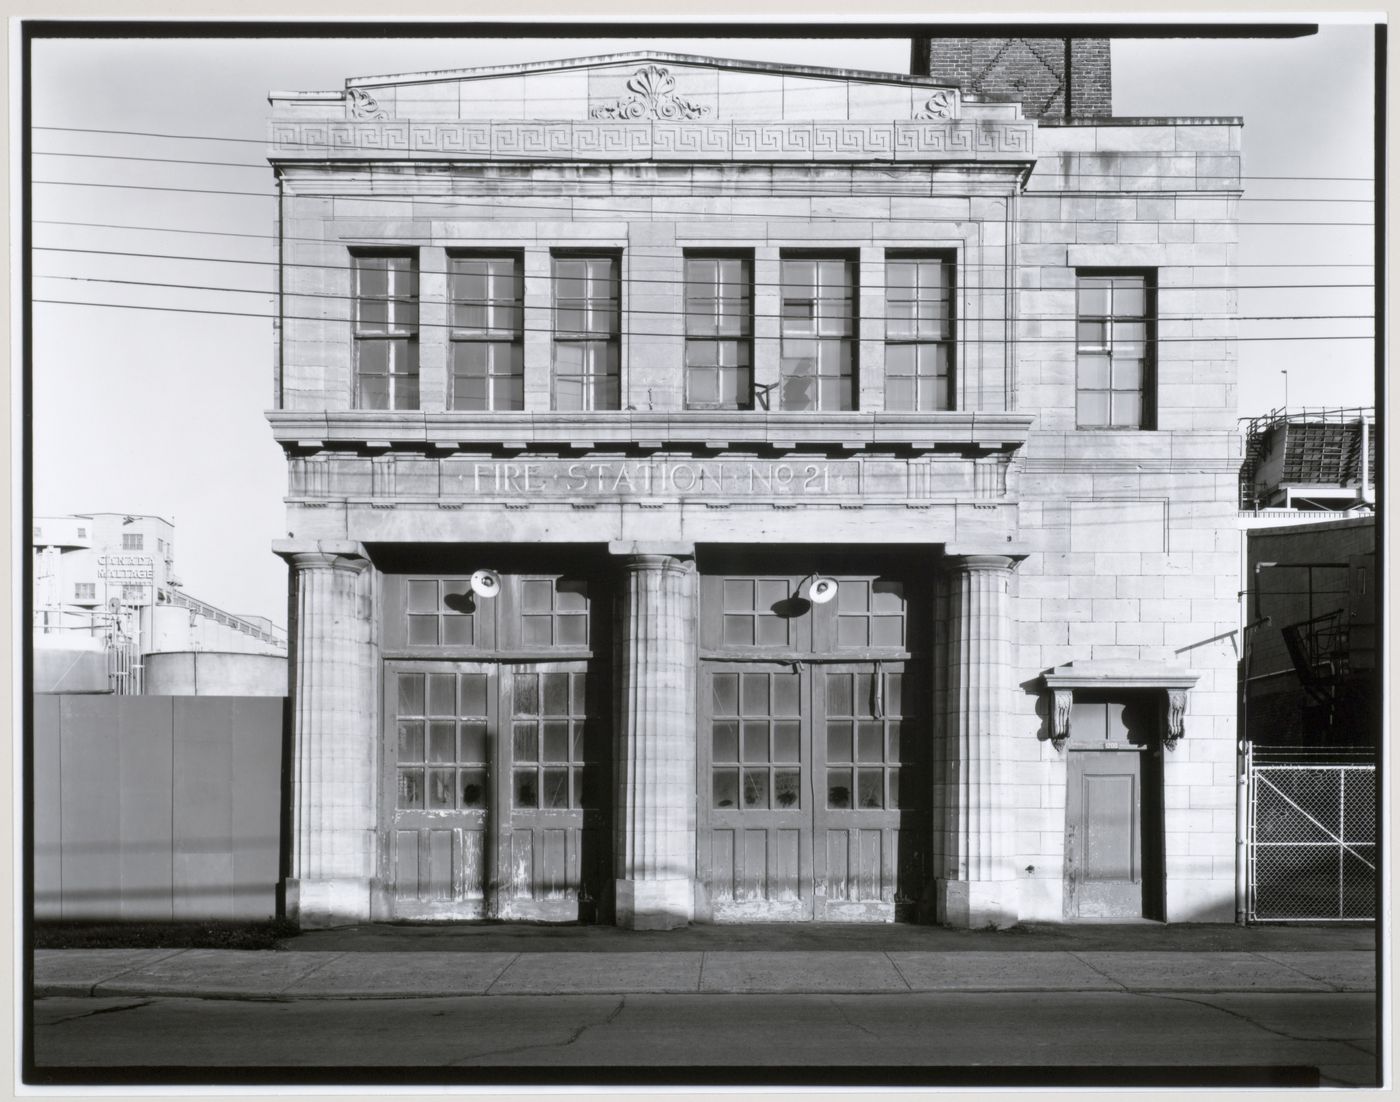 View of the principal façade of Fire Station no. 21, 1200 Mill Street, Montréal, Québec